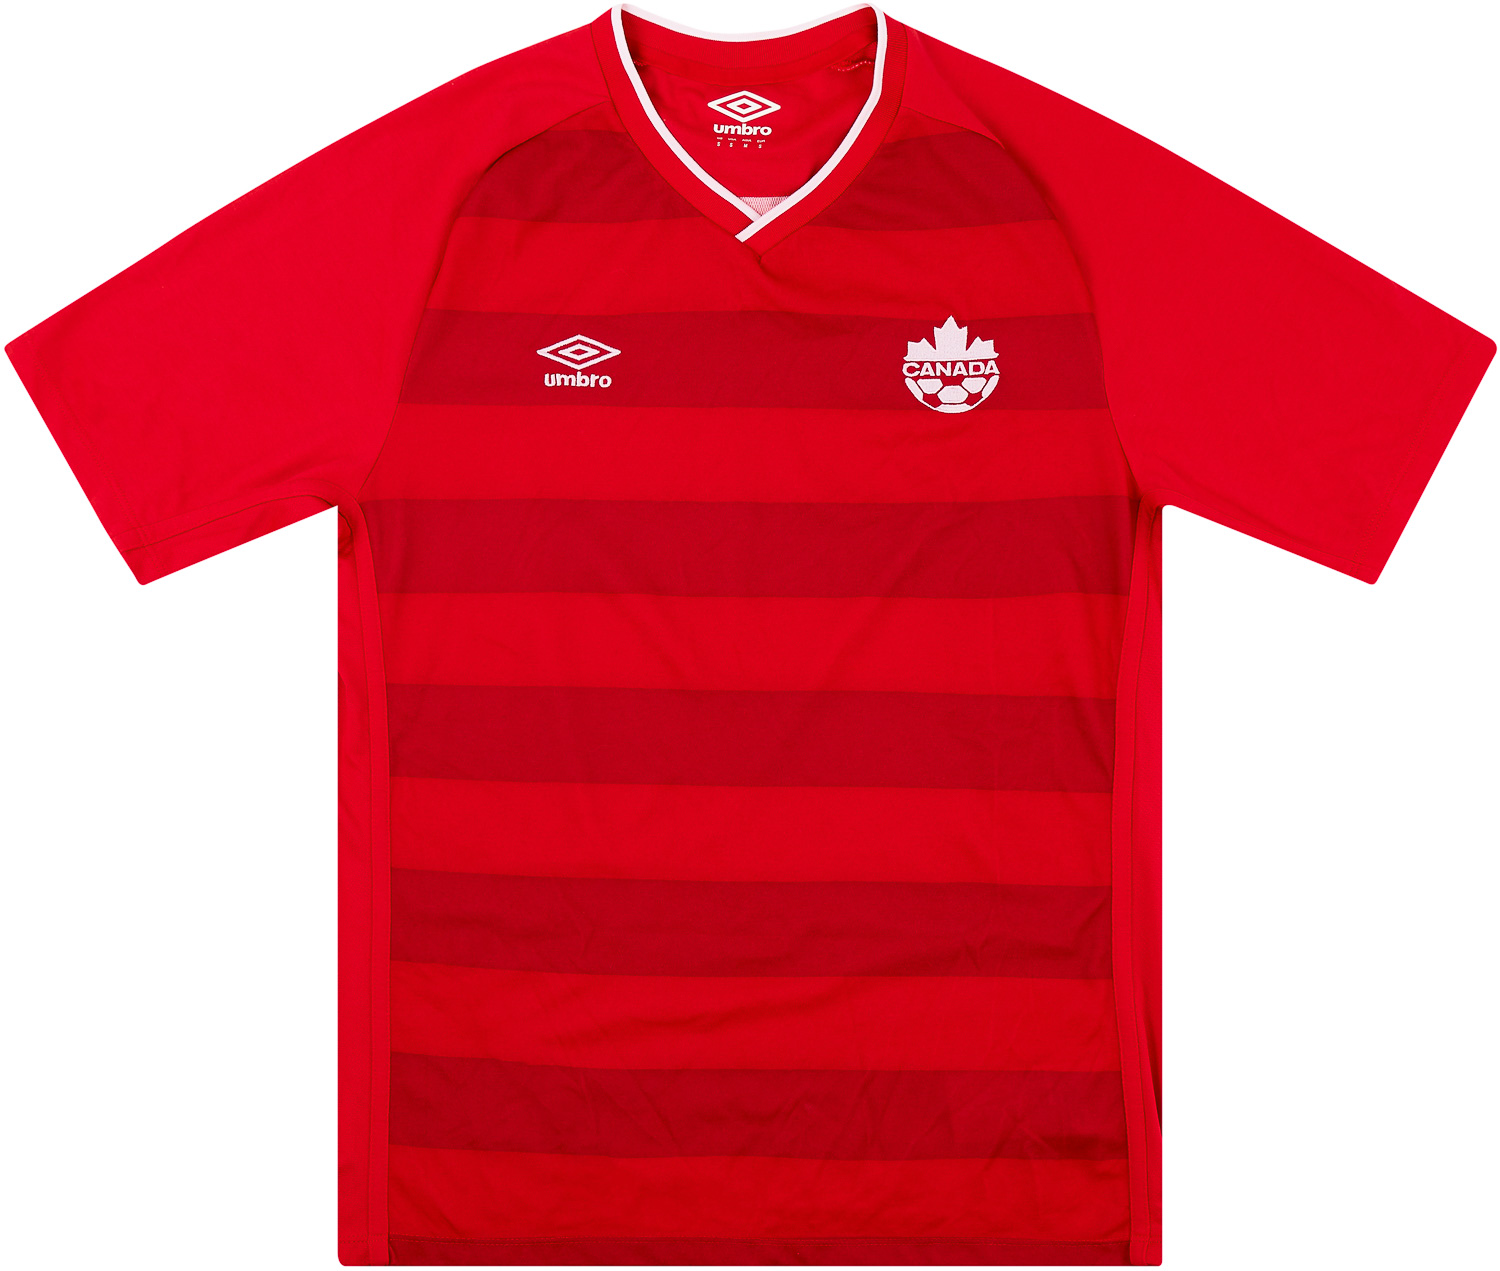 Canada  home shirt  (Original)